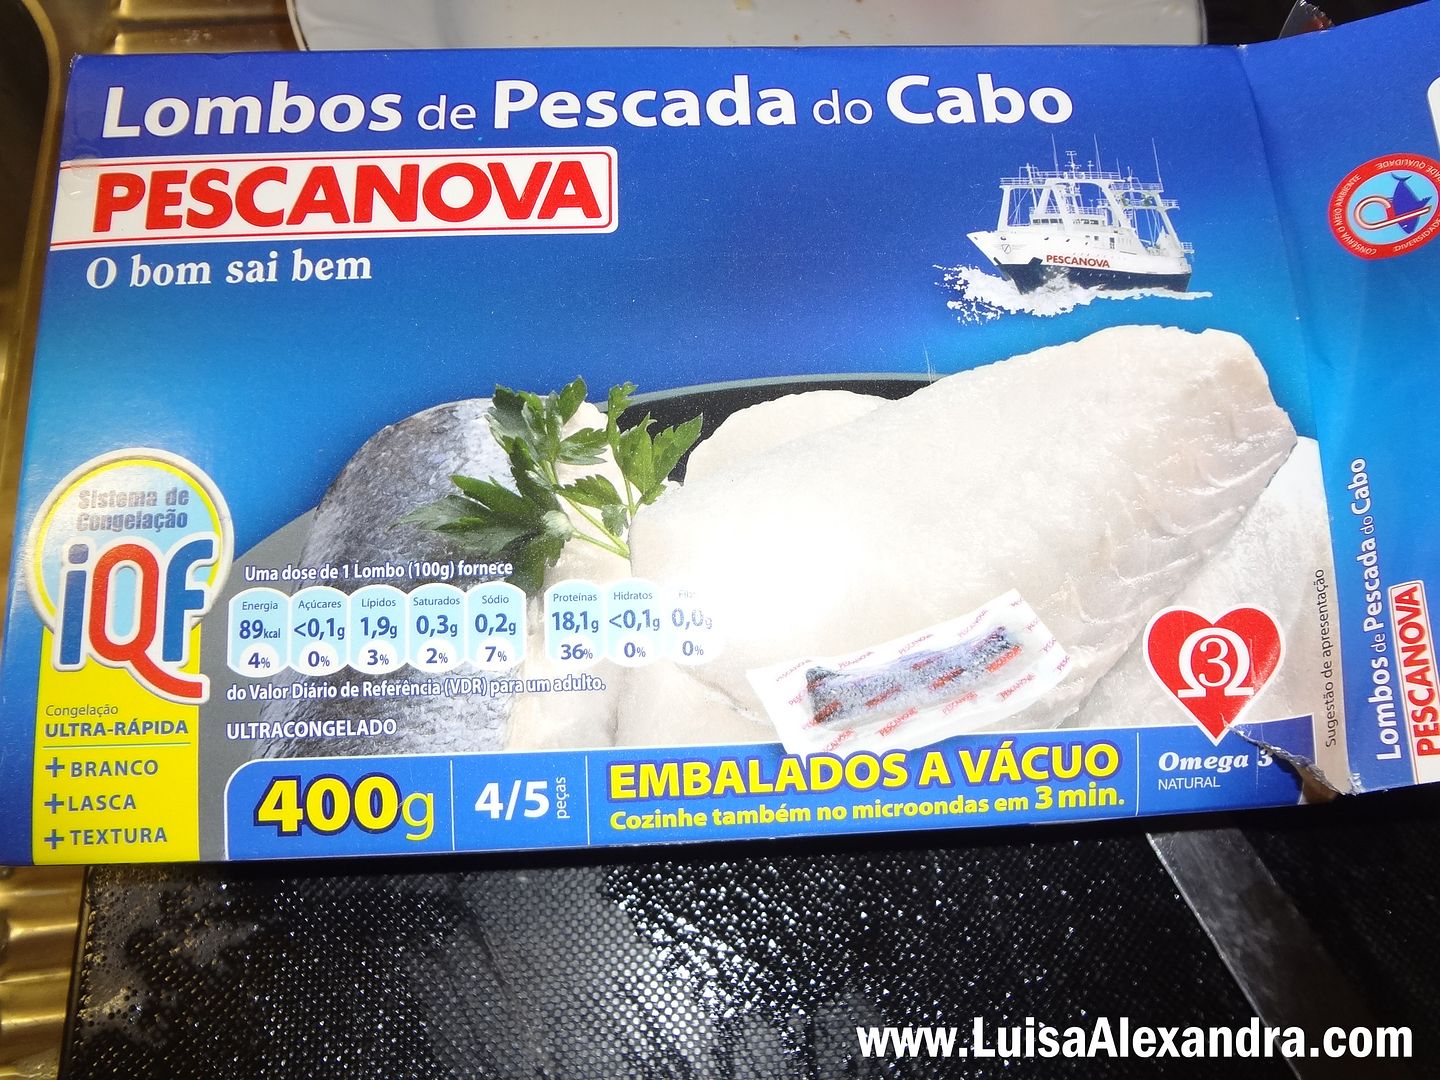 Lombos de Pescada do Cabo photo DSC06156.jpg